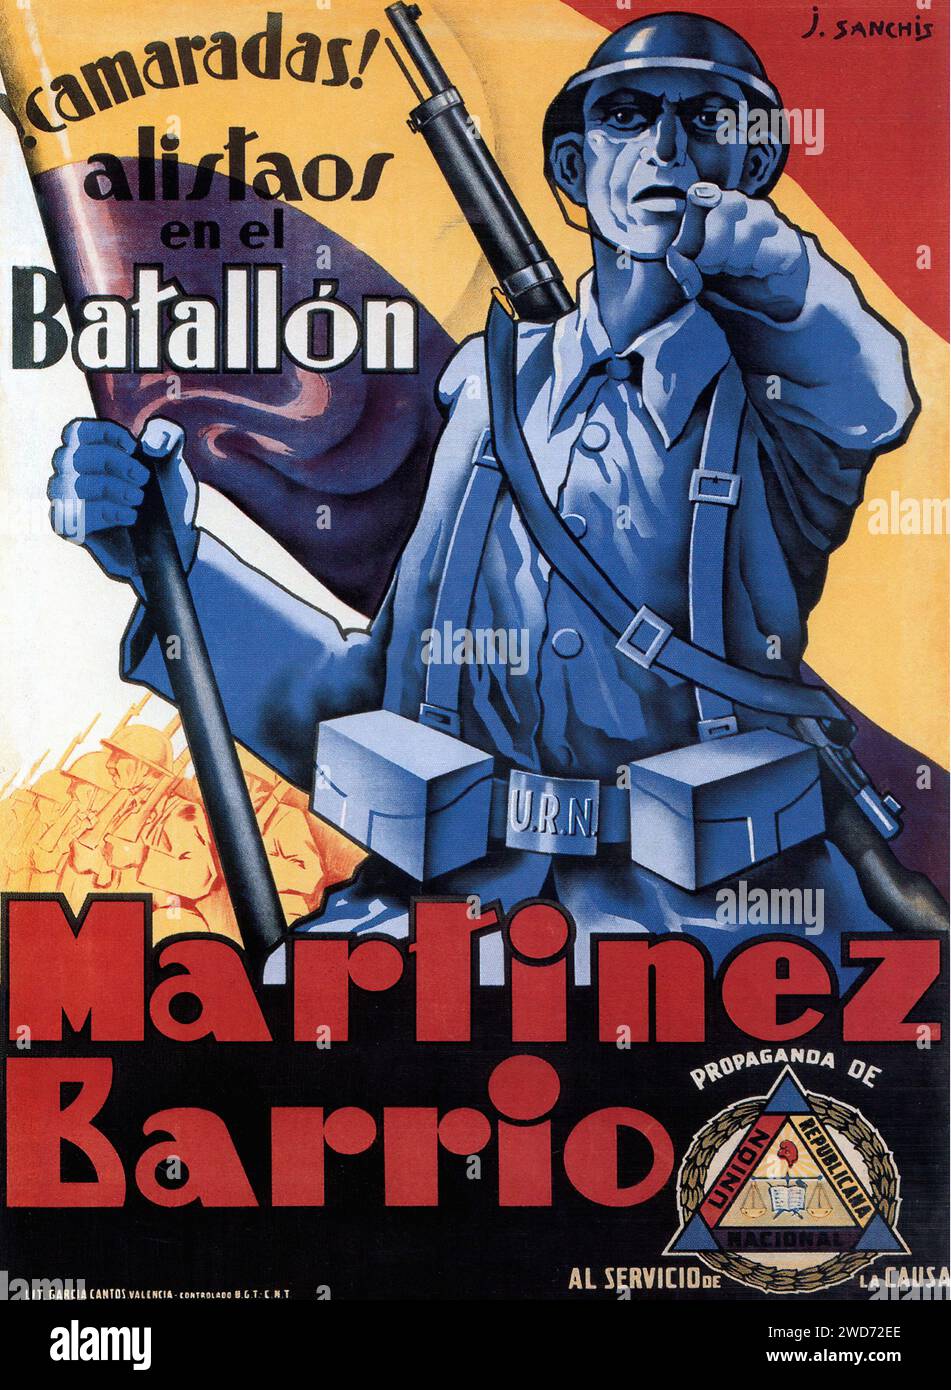 '¡CAMARADAS ! ALISTÁOS EN EL BATALLÓN MARTÍNEZ BARRIO' 'CAMARADES! Enrôlez-vous dans le bataillon Martinez Barrio.' L'affiche est un appel de recrutement pour le bataillon Martinez Barrio, mettant en vedette un soldat pointant directement vers le spectateur, rappelant les célèbres affiches "Je veux vous". La conception graphique emploie des nuances de bleu et de rouge avec une toile de fond de soldats, créant un sentiment d'immédiateté et de devoir - affiche de propagande de la guerre civile espagnole (Guerra civil Española) Banque D'Images